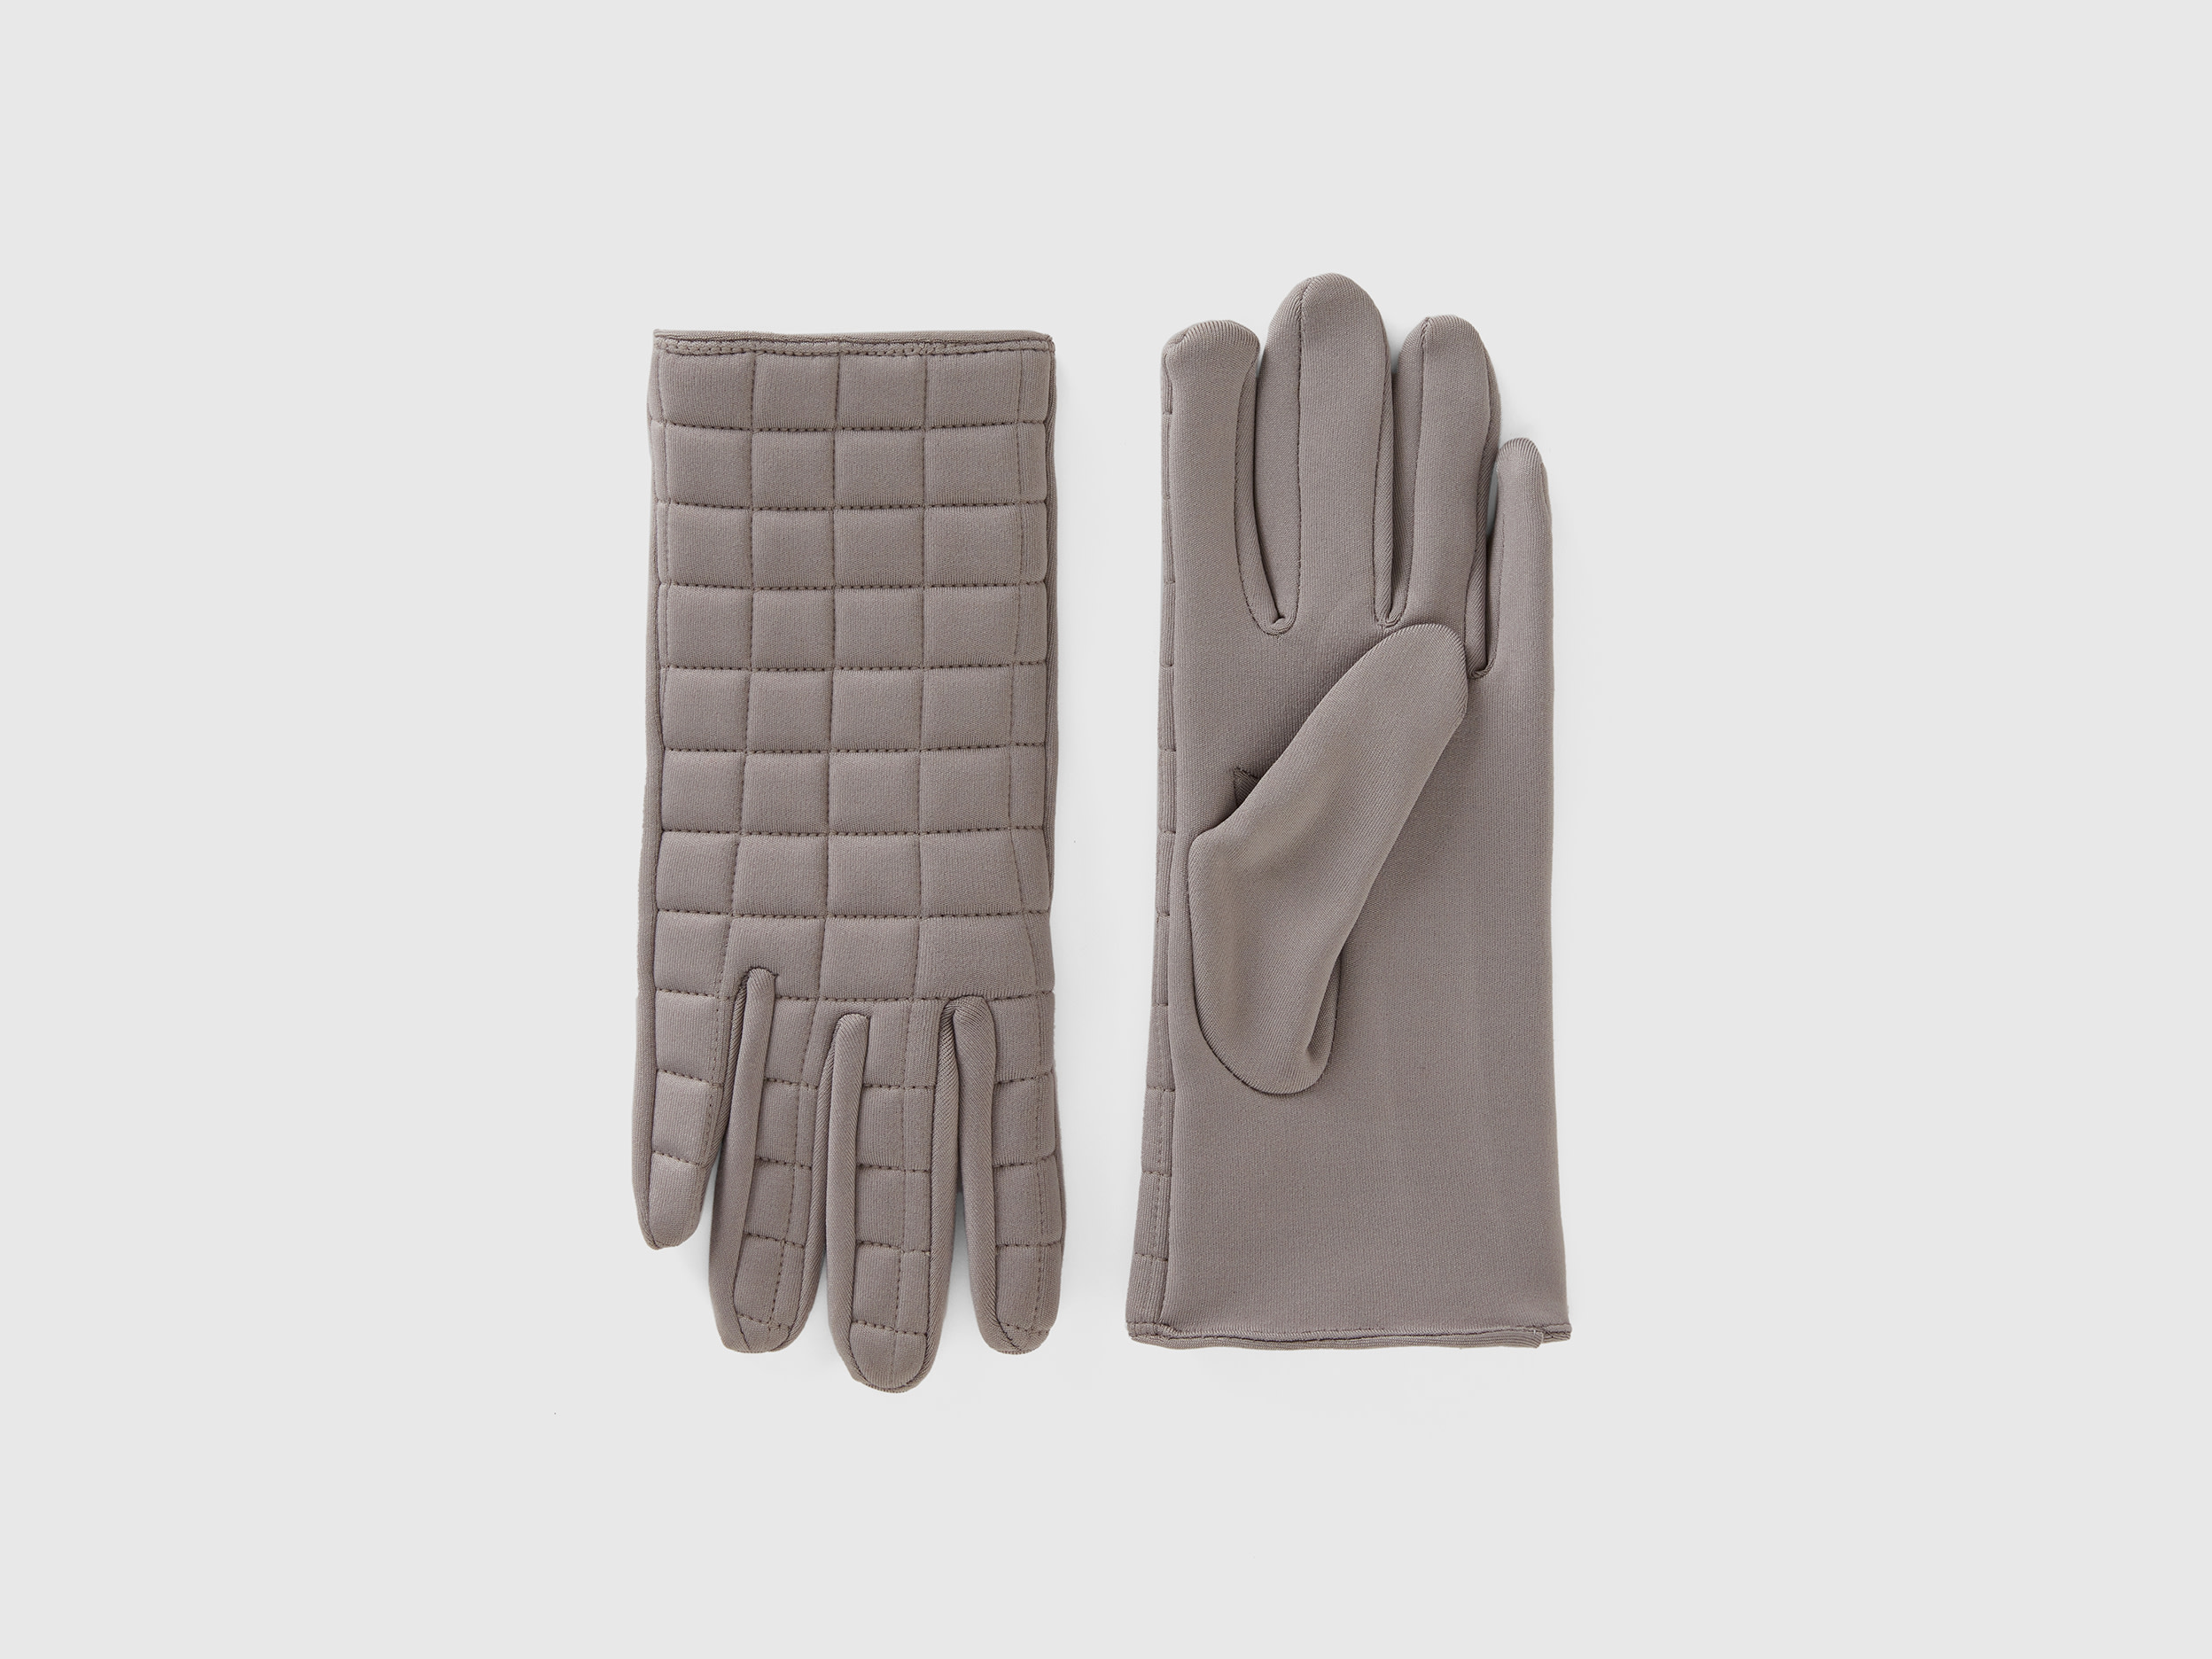 Benetton, Padded Nylon Gloves, size M, Light Gray, Women